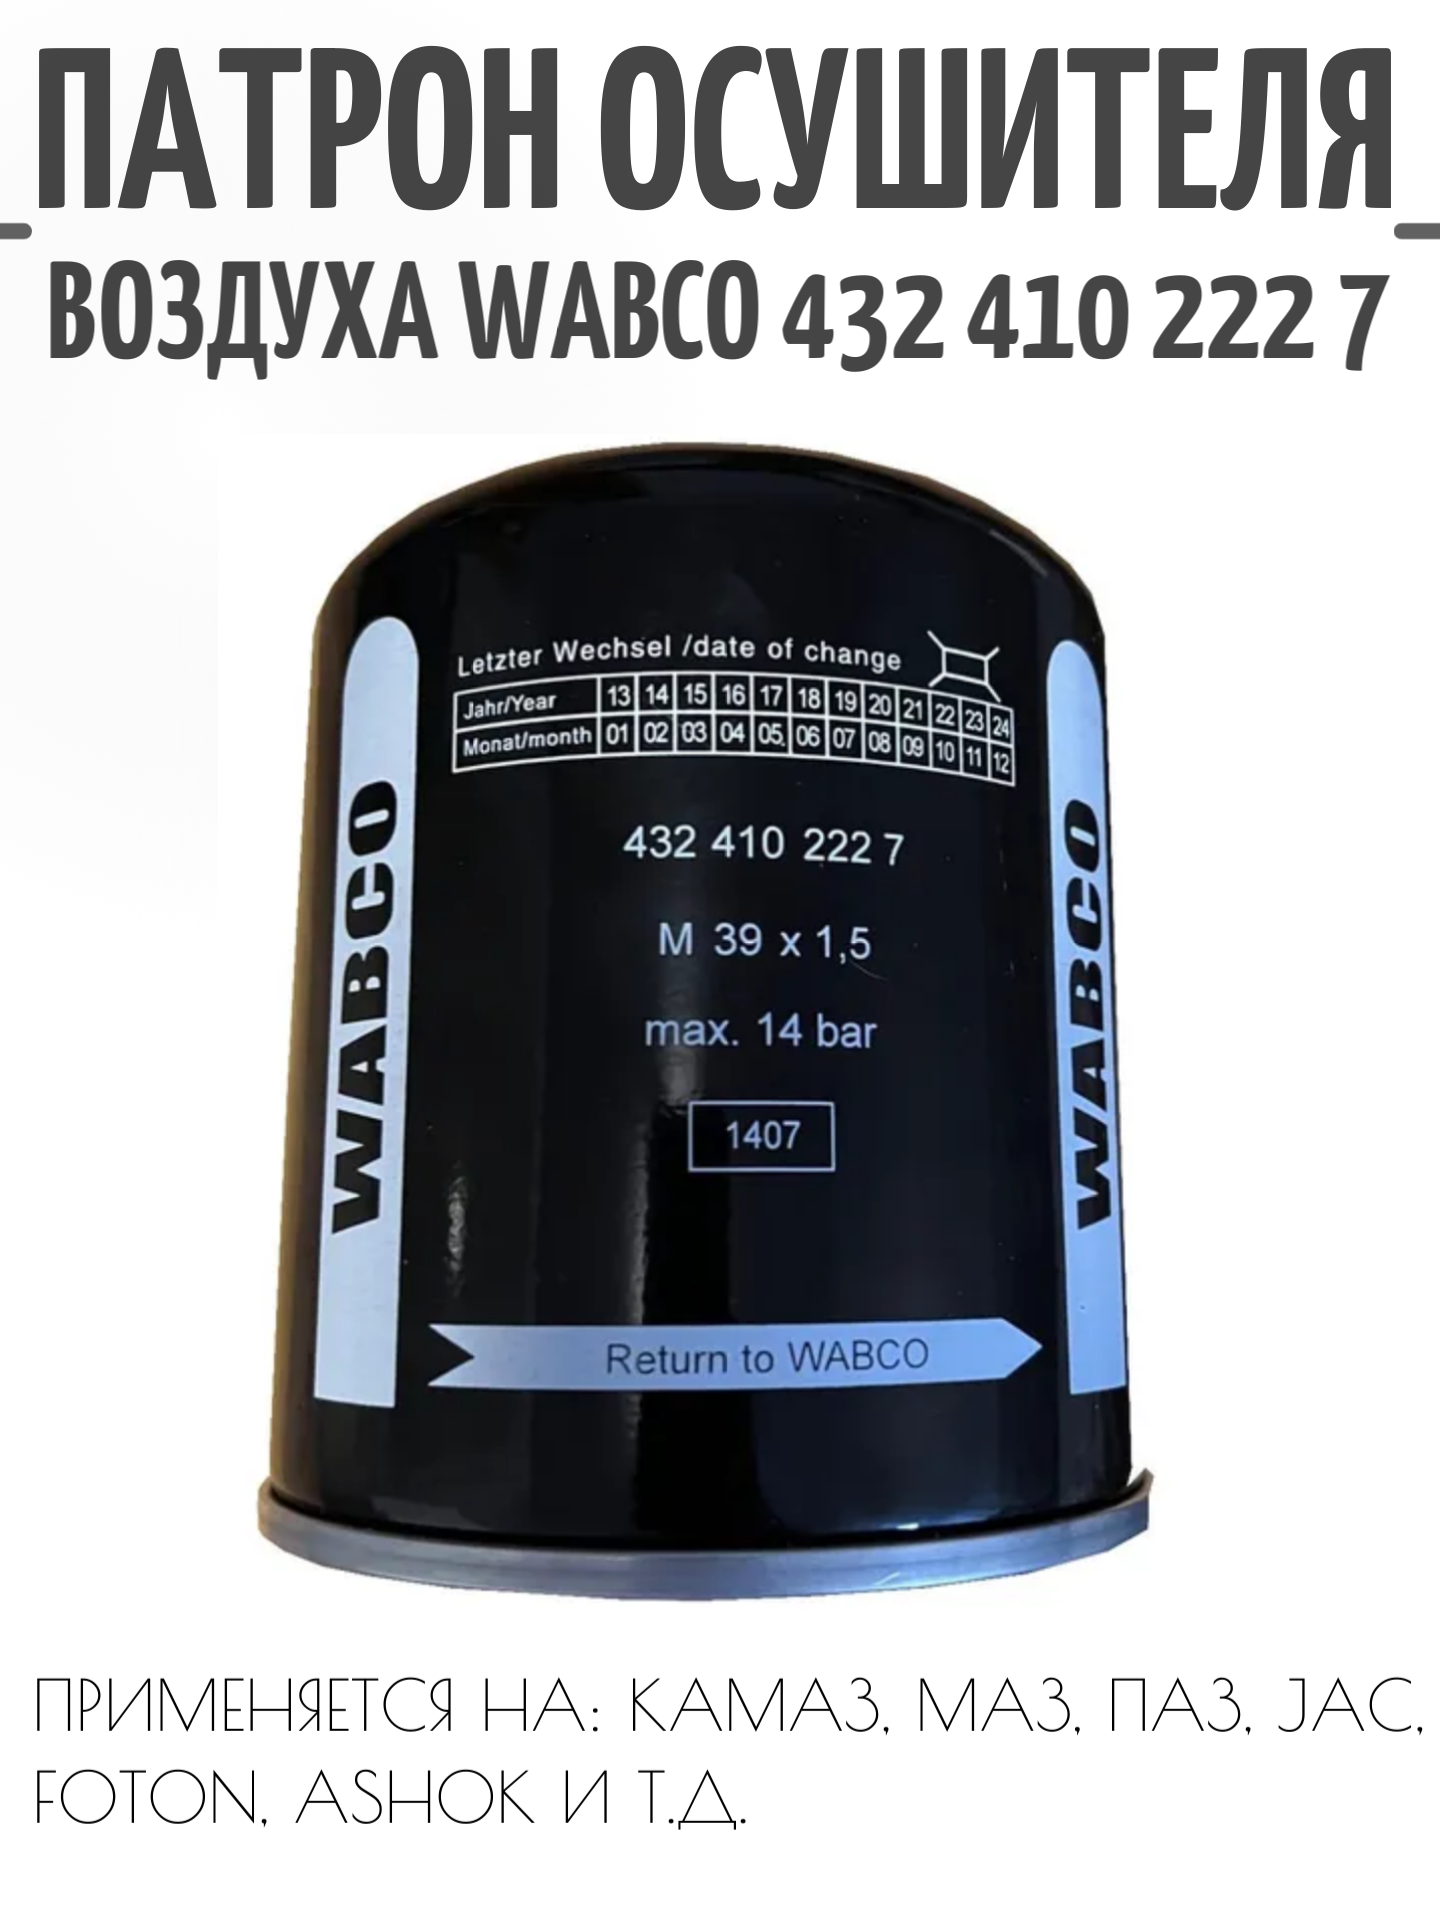 Фильтр сепаратор пневматической системы тормозов, WABCO.